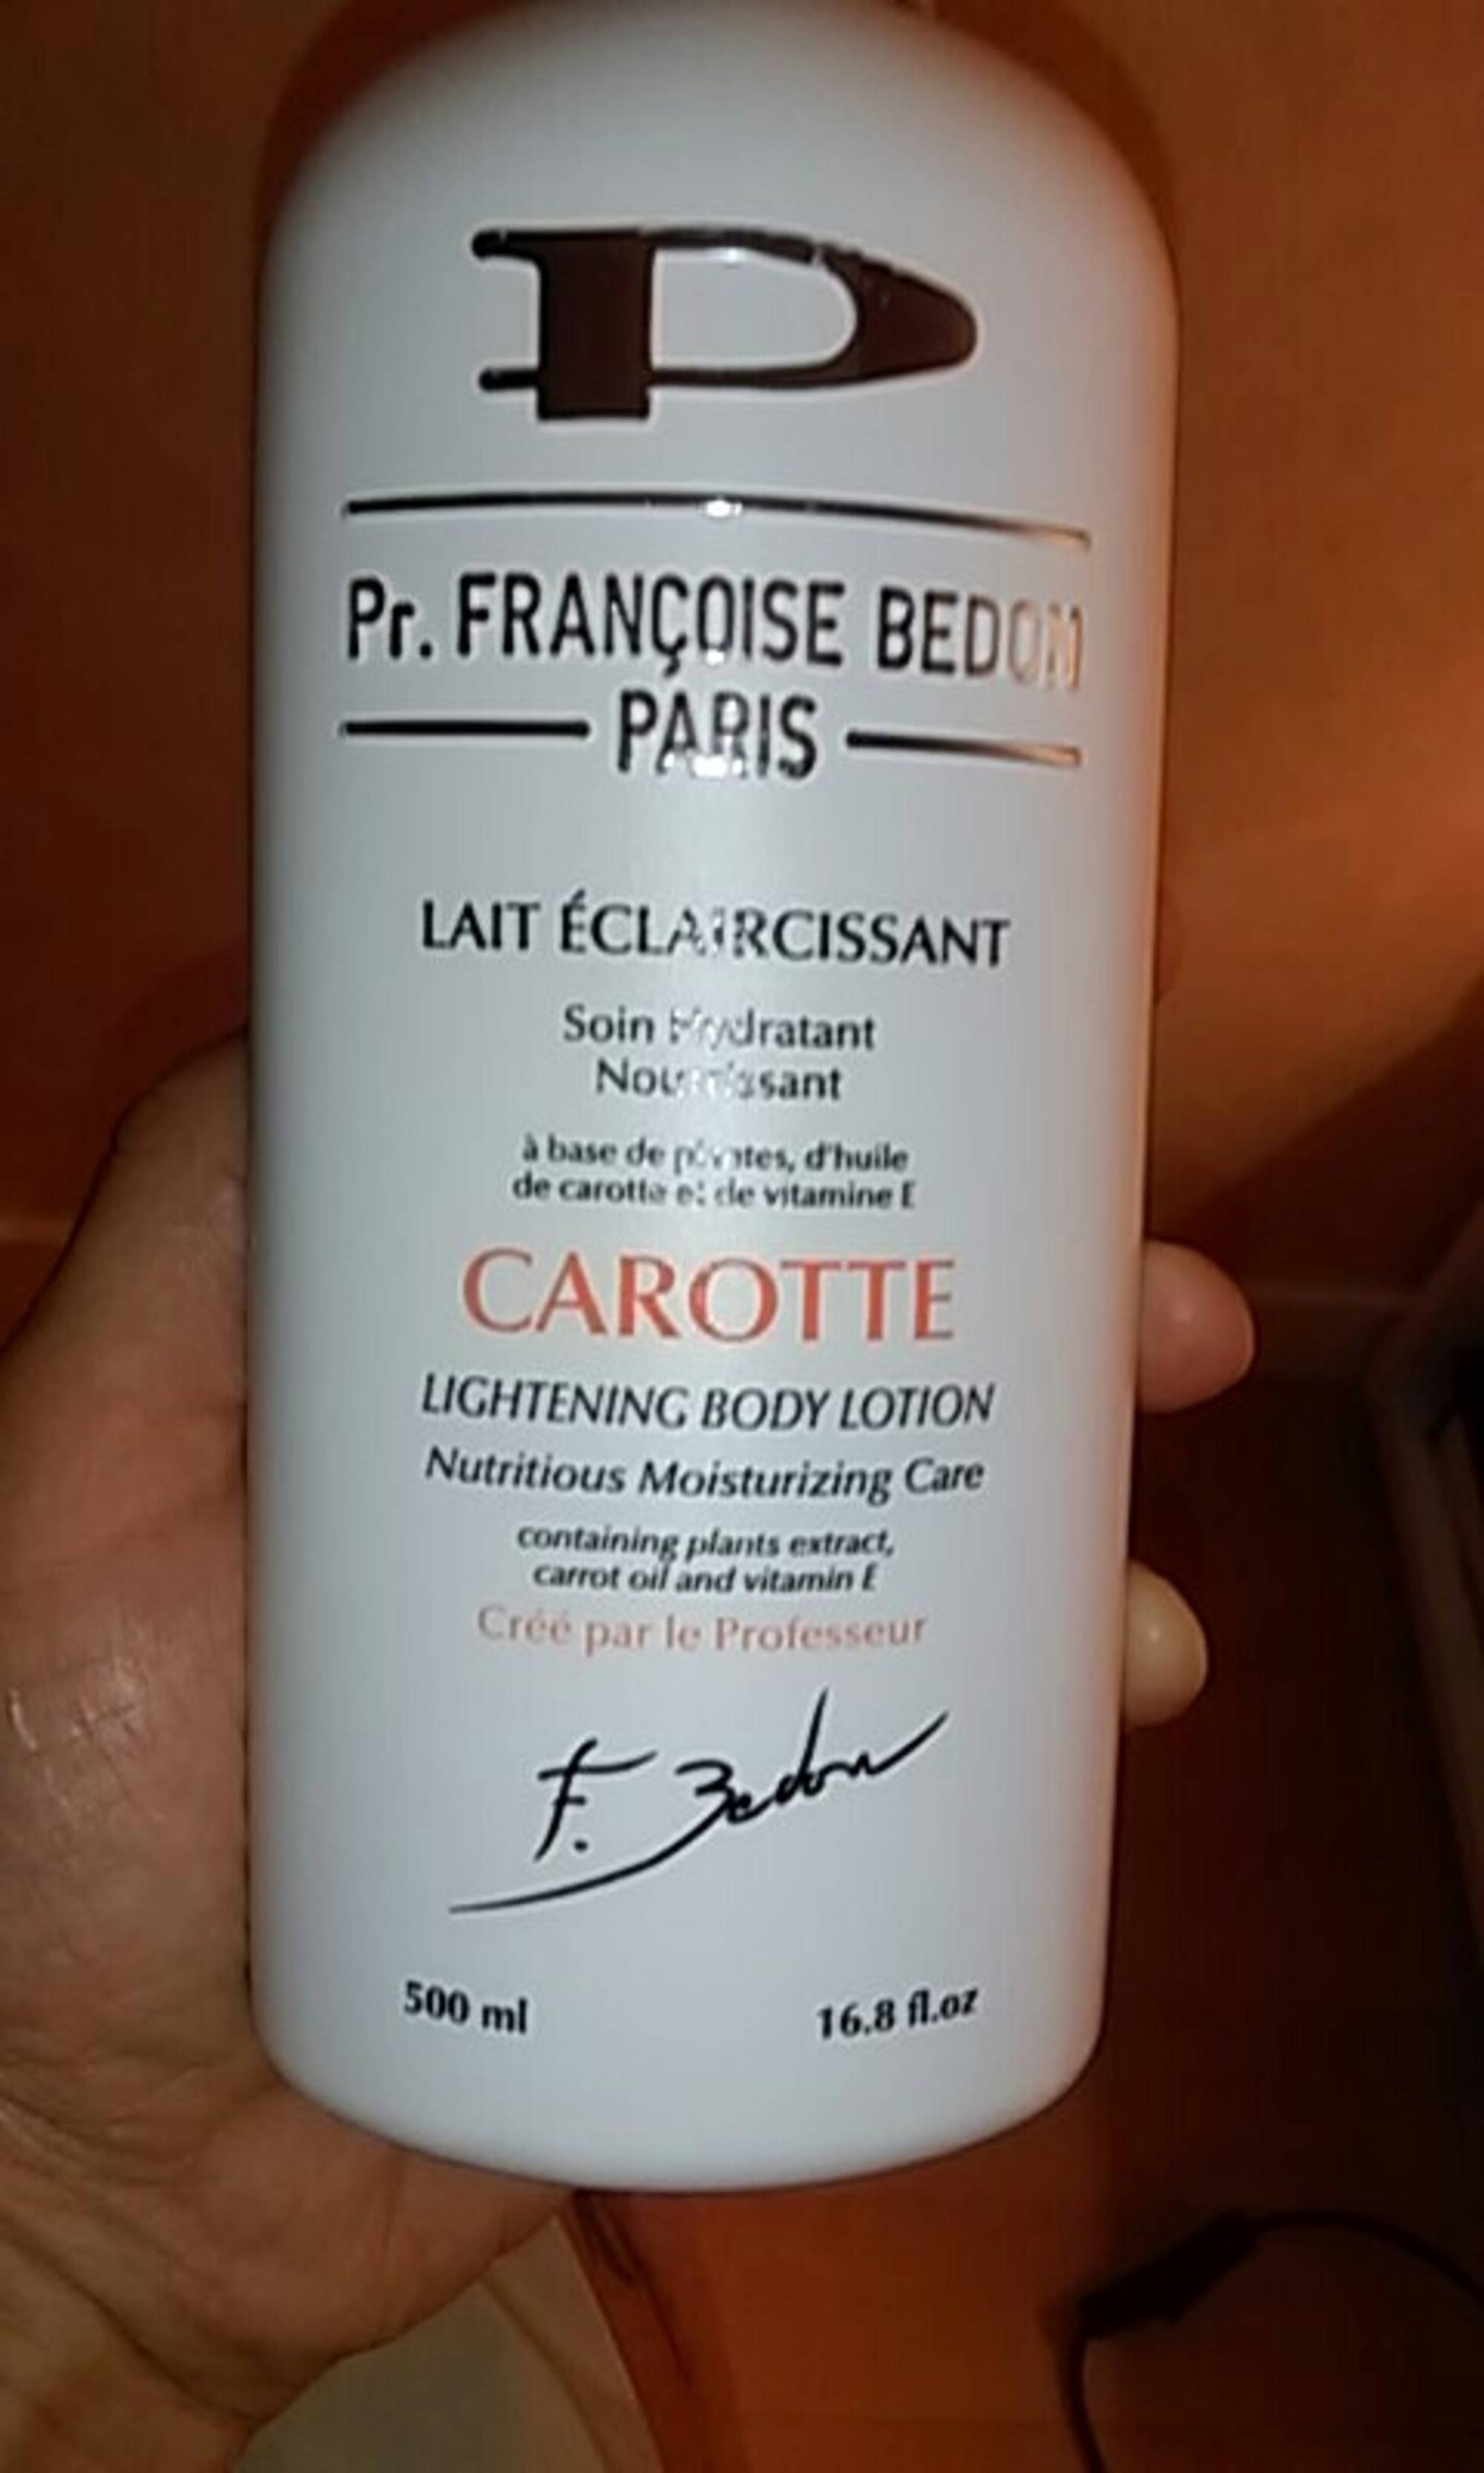 PR. FRANÇOISE BEDON PARIS - Carotte - Lait éclaircissant